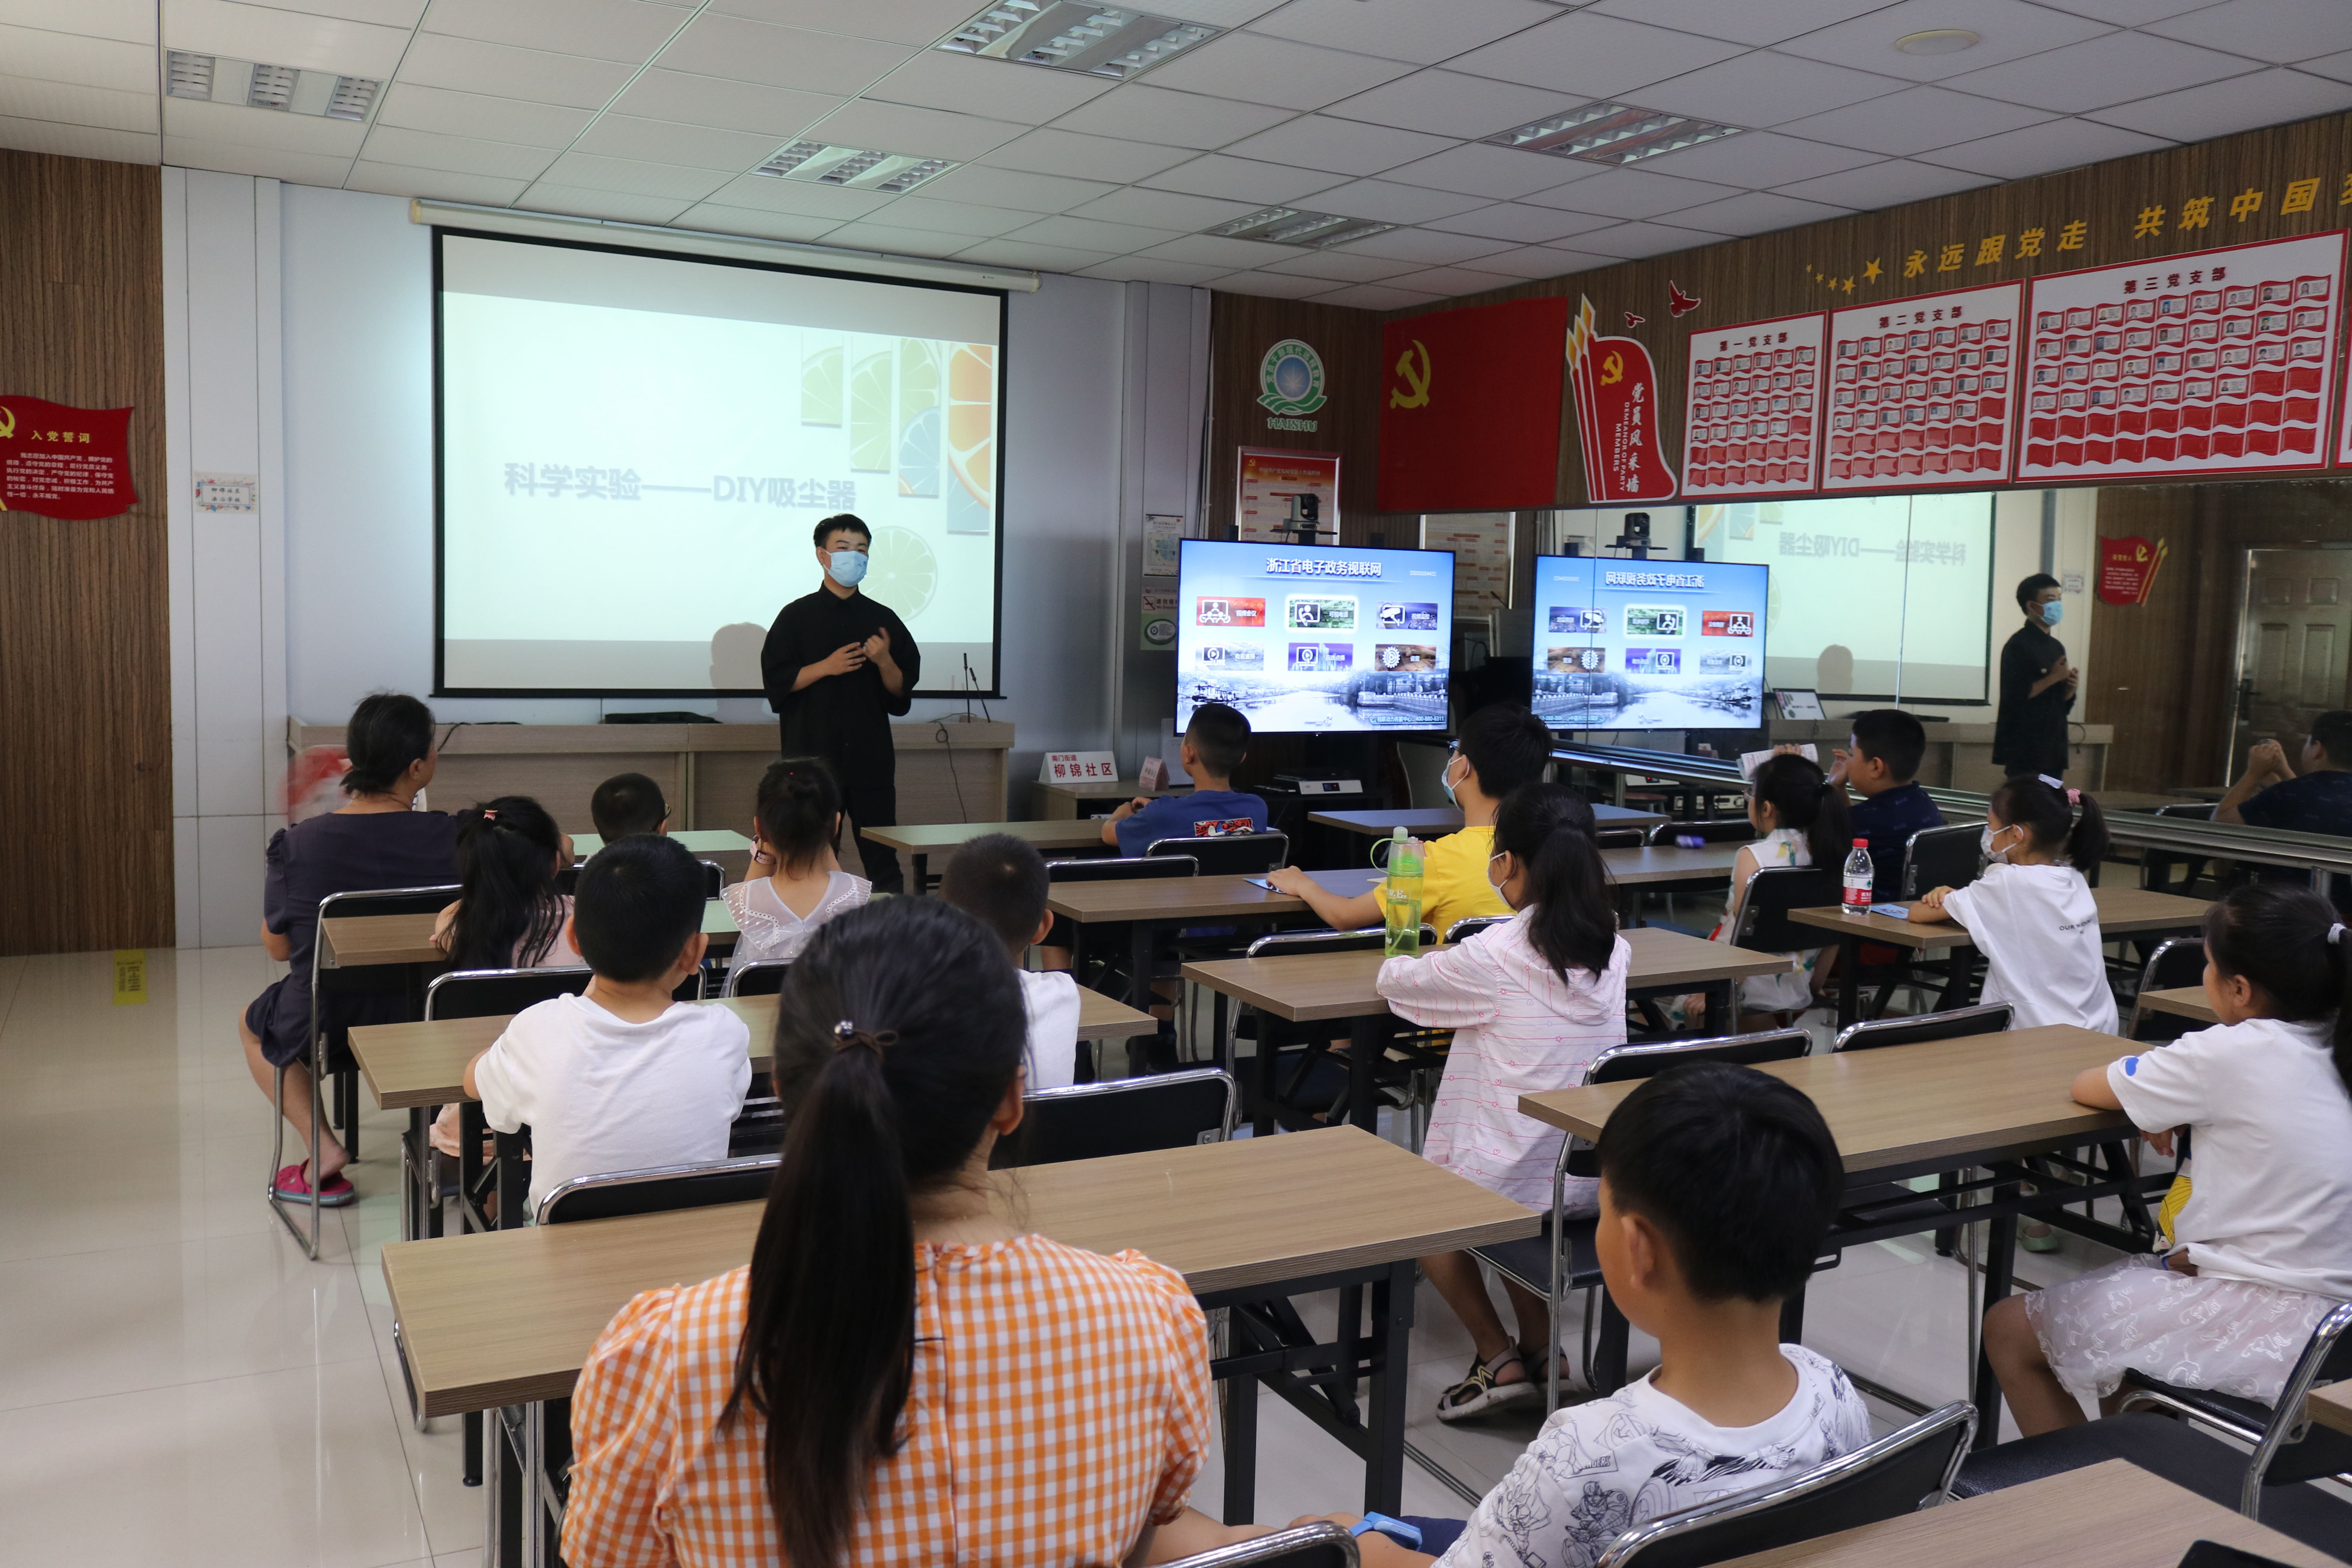 柳锦社区开展“探究科学实验，DIY吸尘器”暑期活动